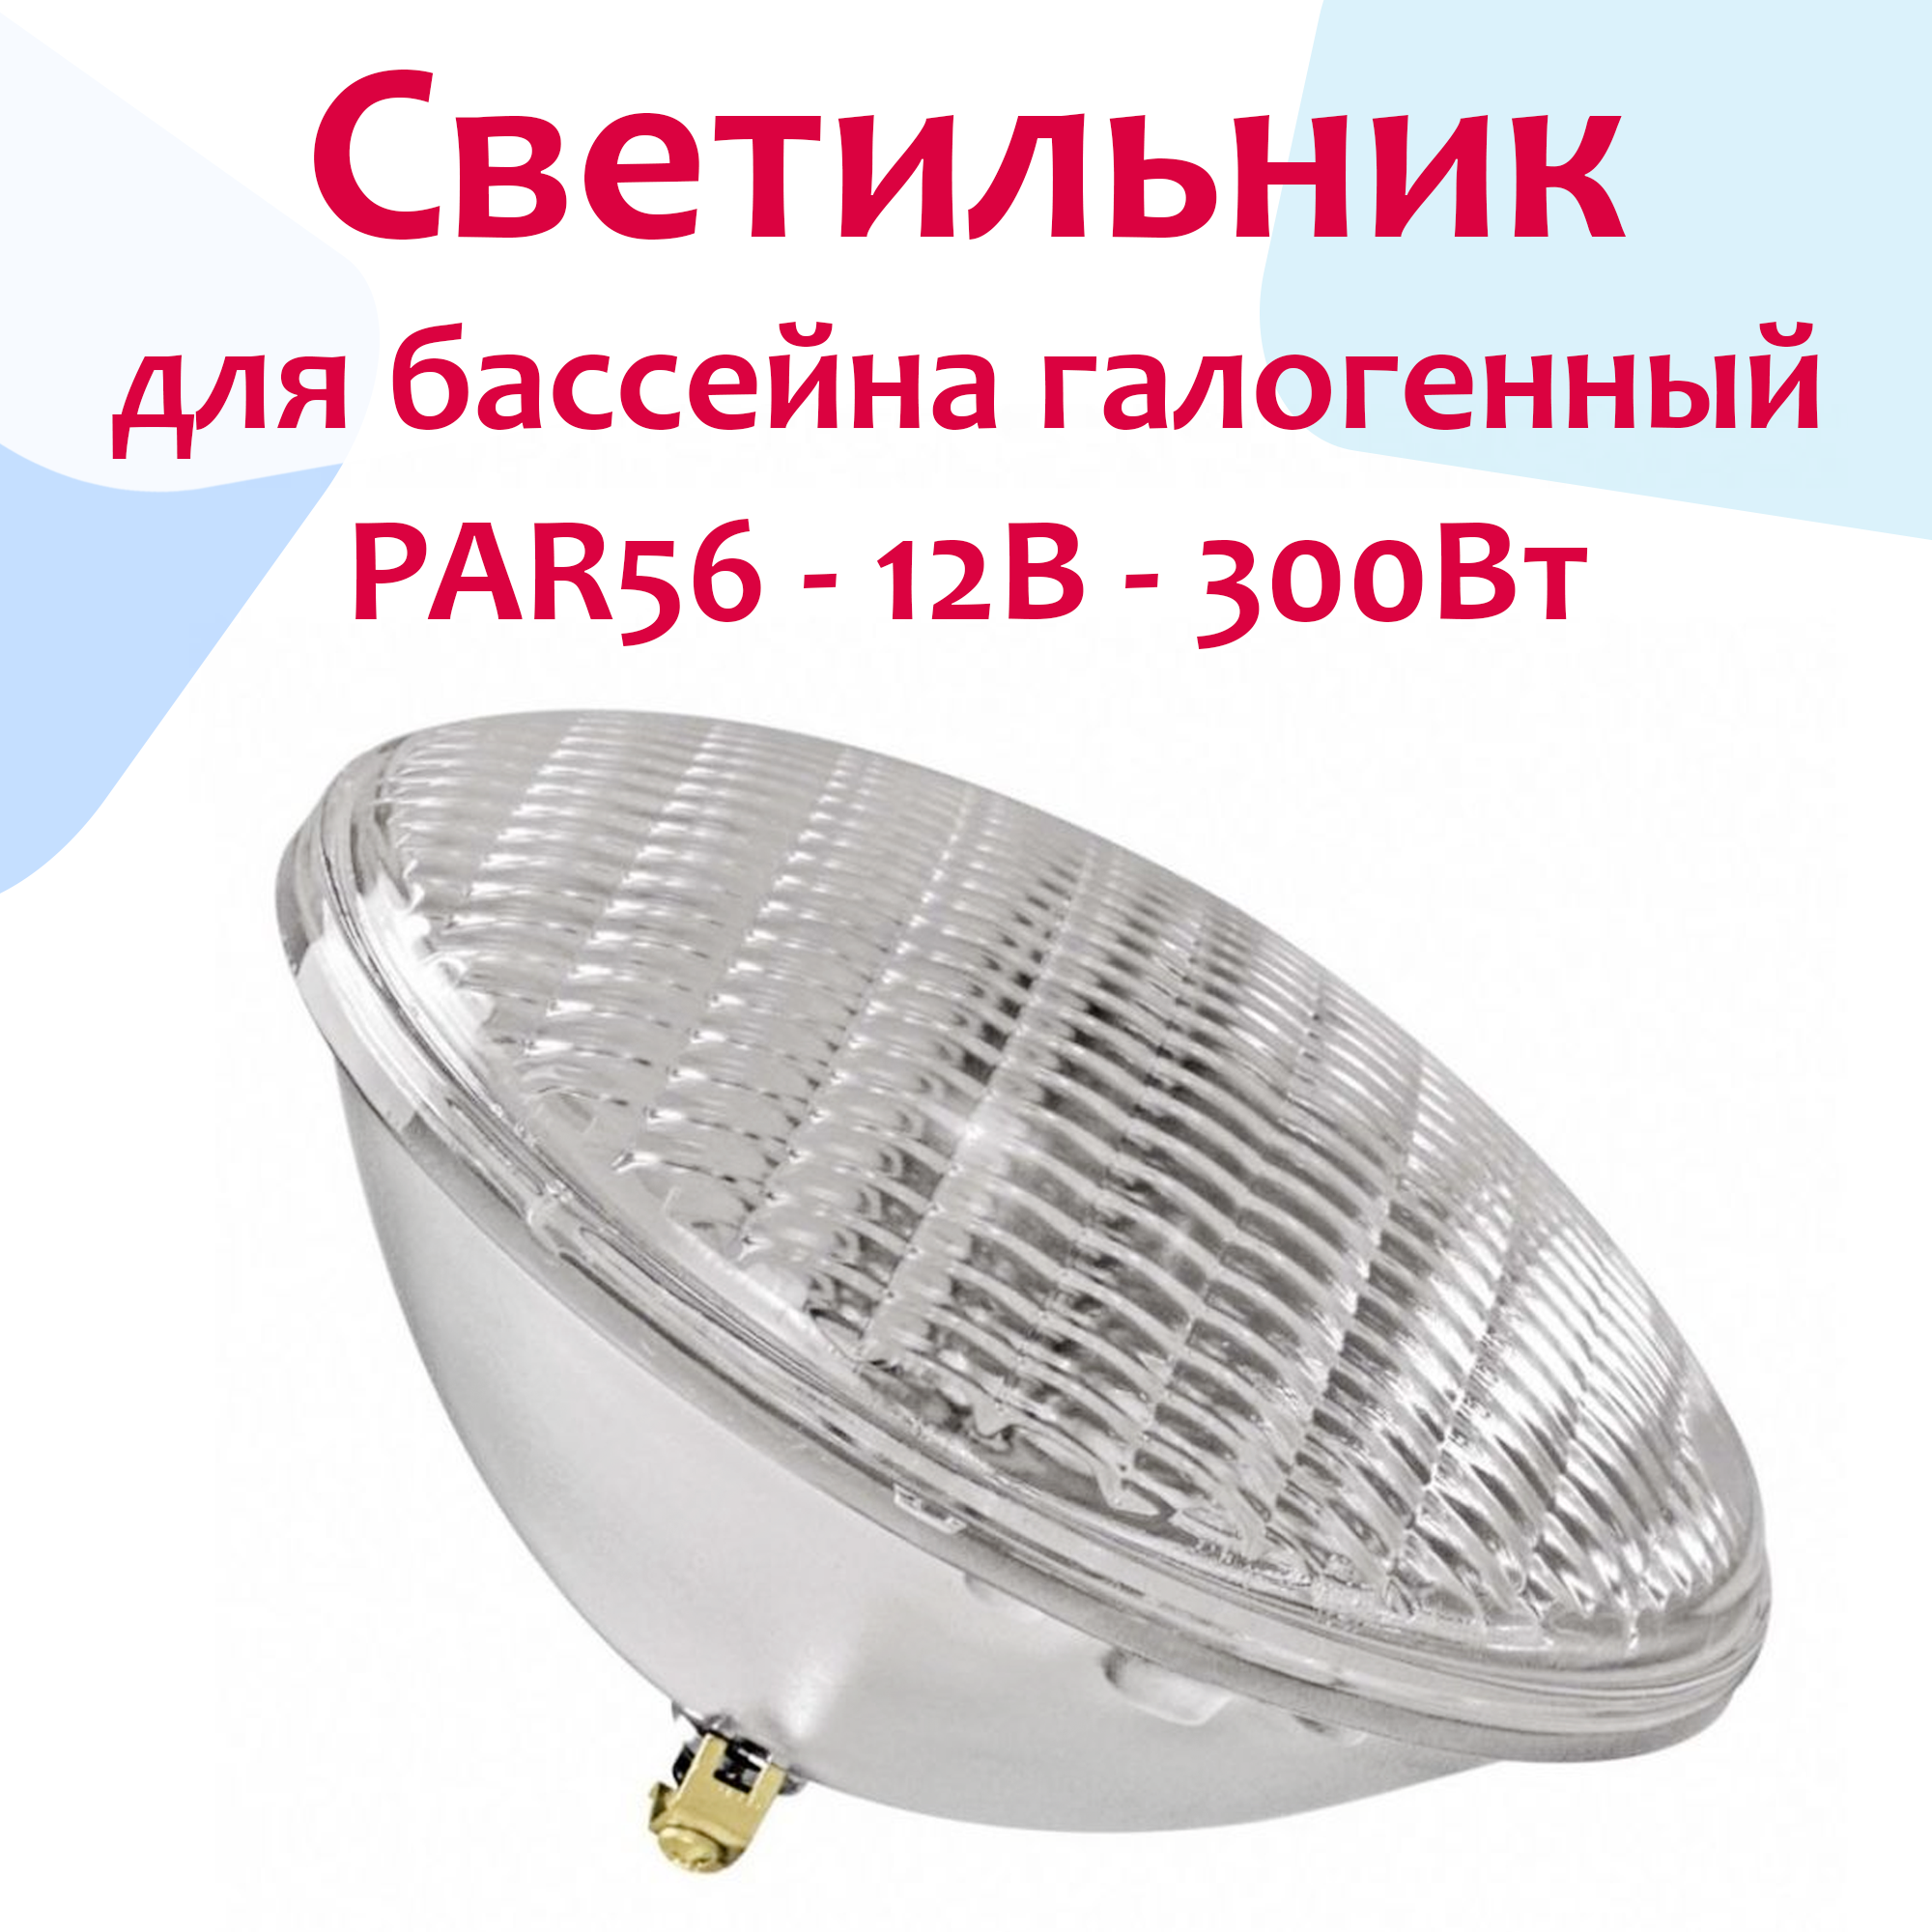 Светильник (прожектор) для бассейна галогенный PAR56 - 12В 300Вт